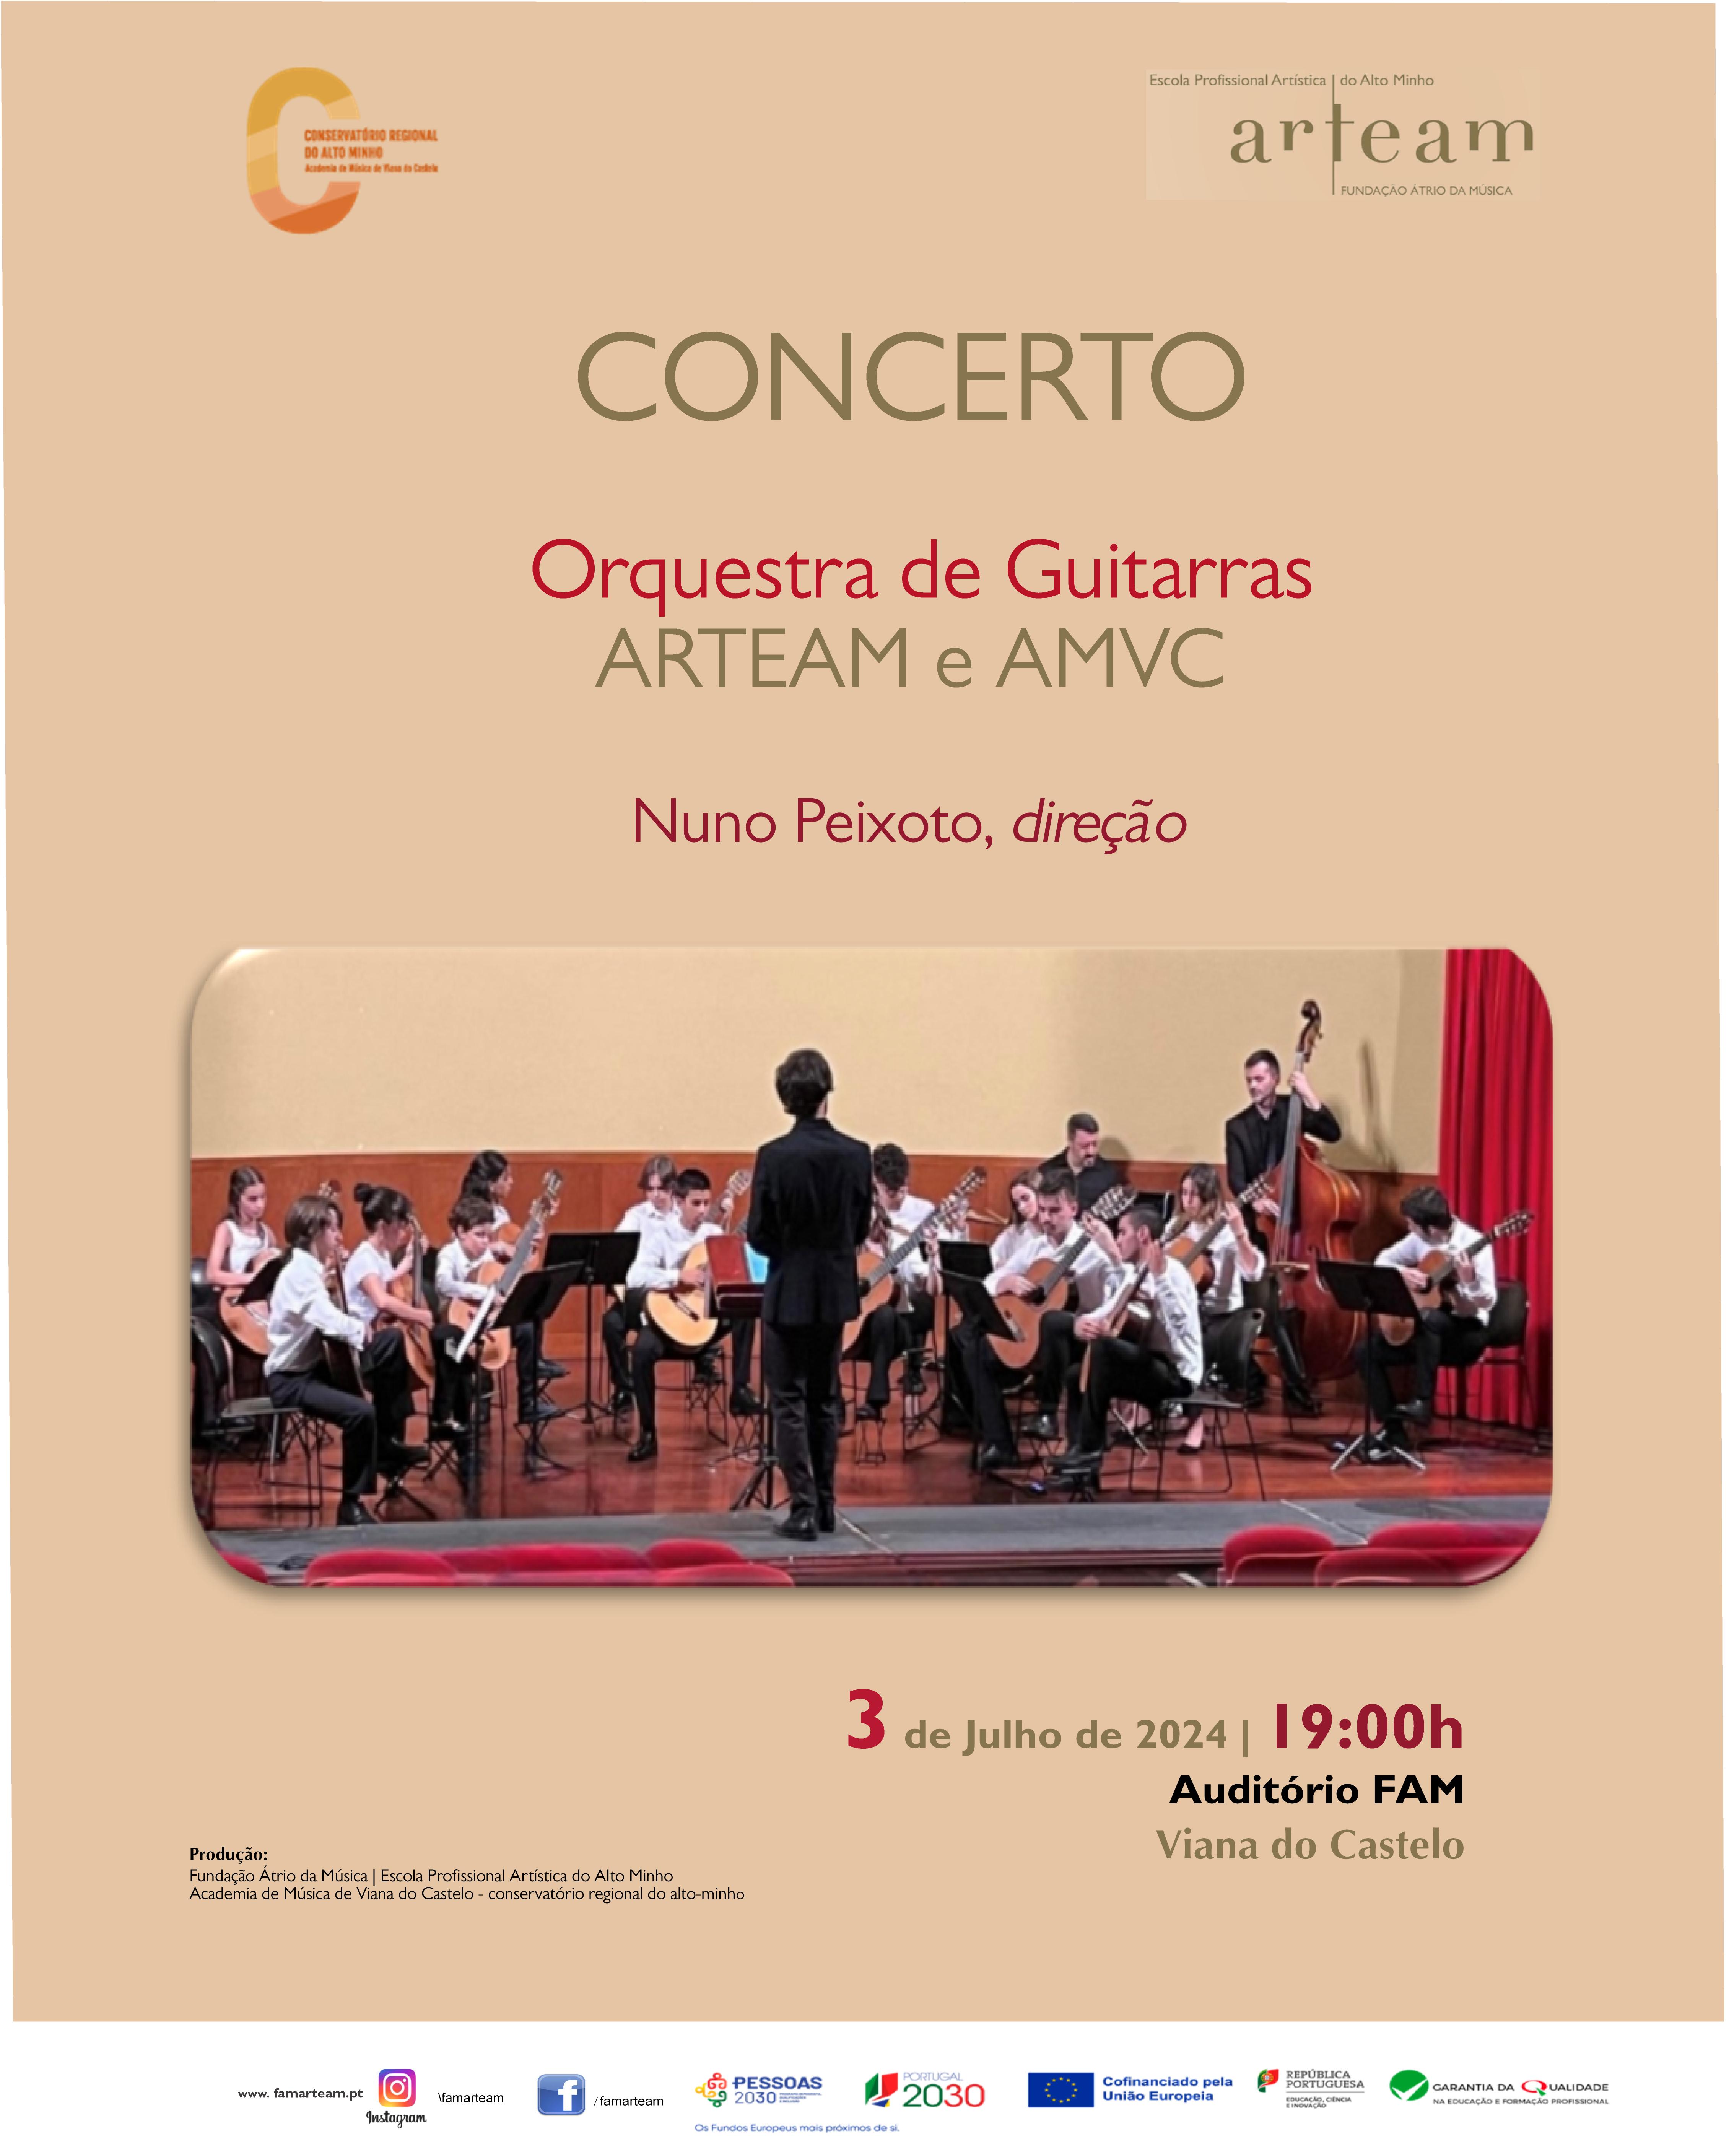 Concerto de encerramento do IV Estágio da Orquestra de Guitarras da ARTEAM e AMVC